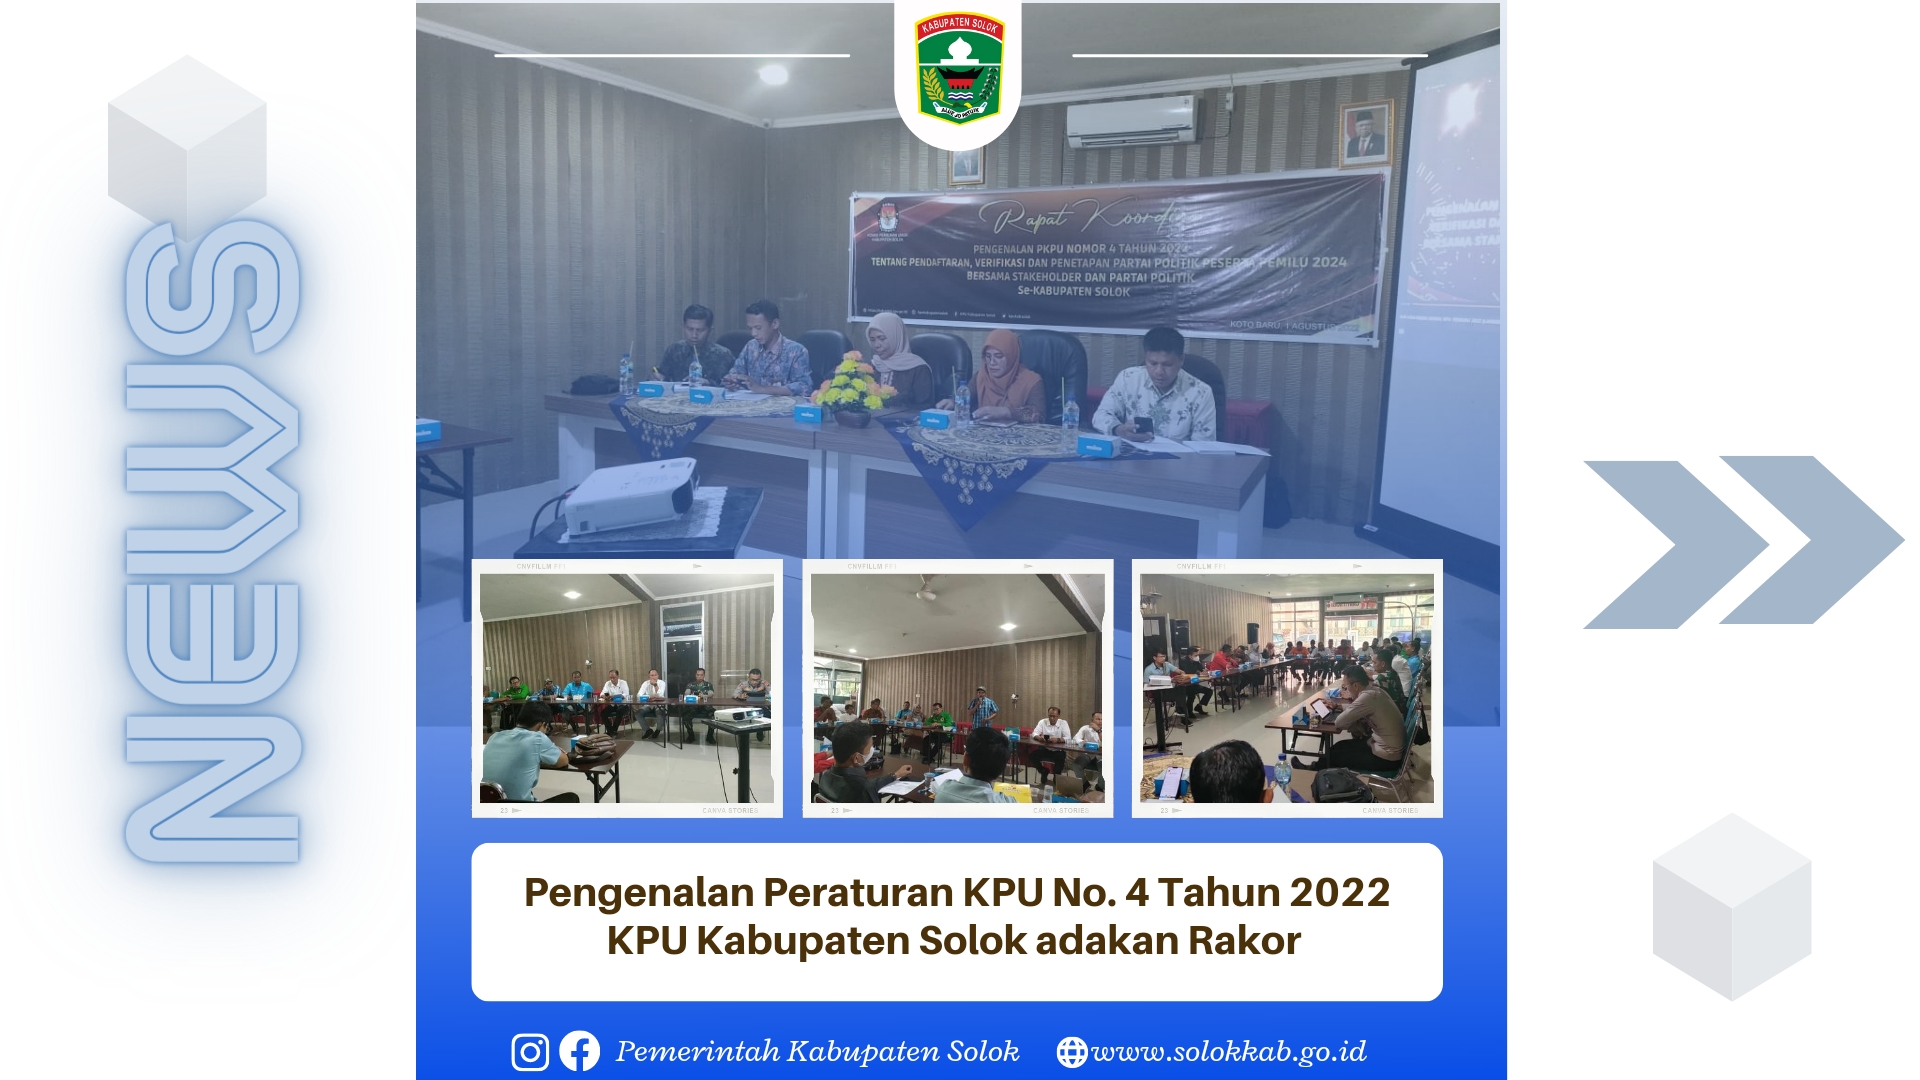 Pengenalan Peraturan KPU No. 4 Tahun 2022, KPU Kabupaten Solok Mengadakan Rakor.